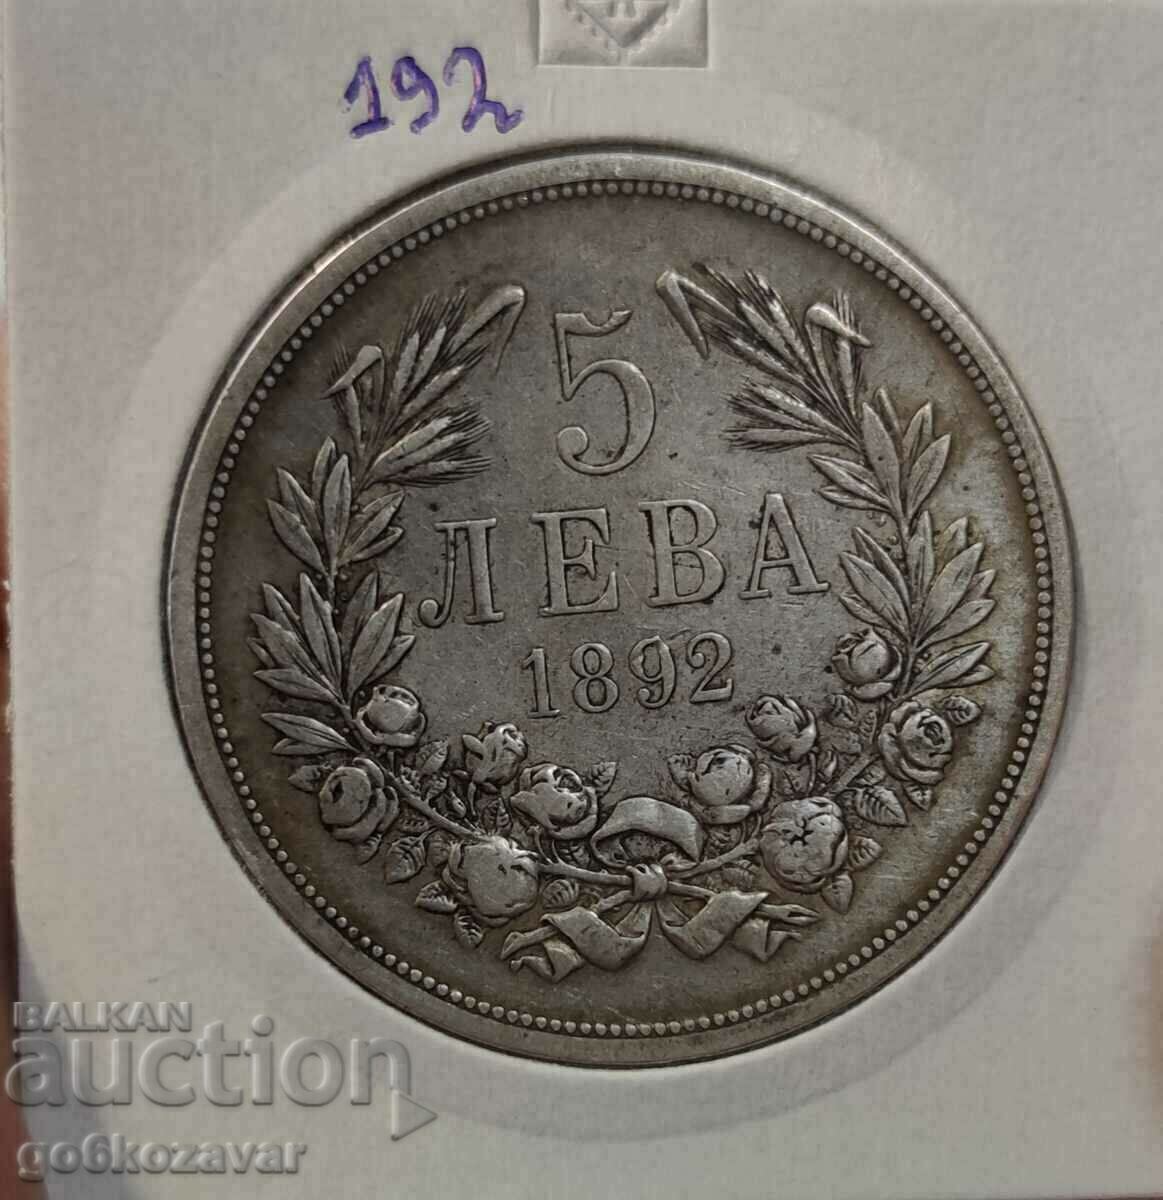 Βουλγαρία 5 BGN 1892 Ασήμι! Για συλλογή!